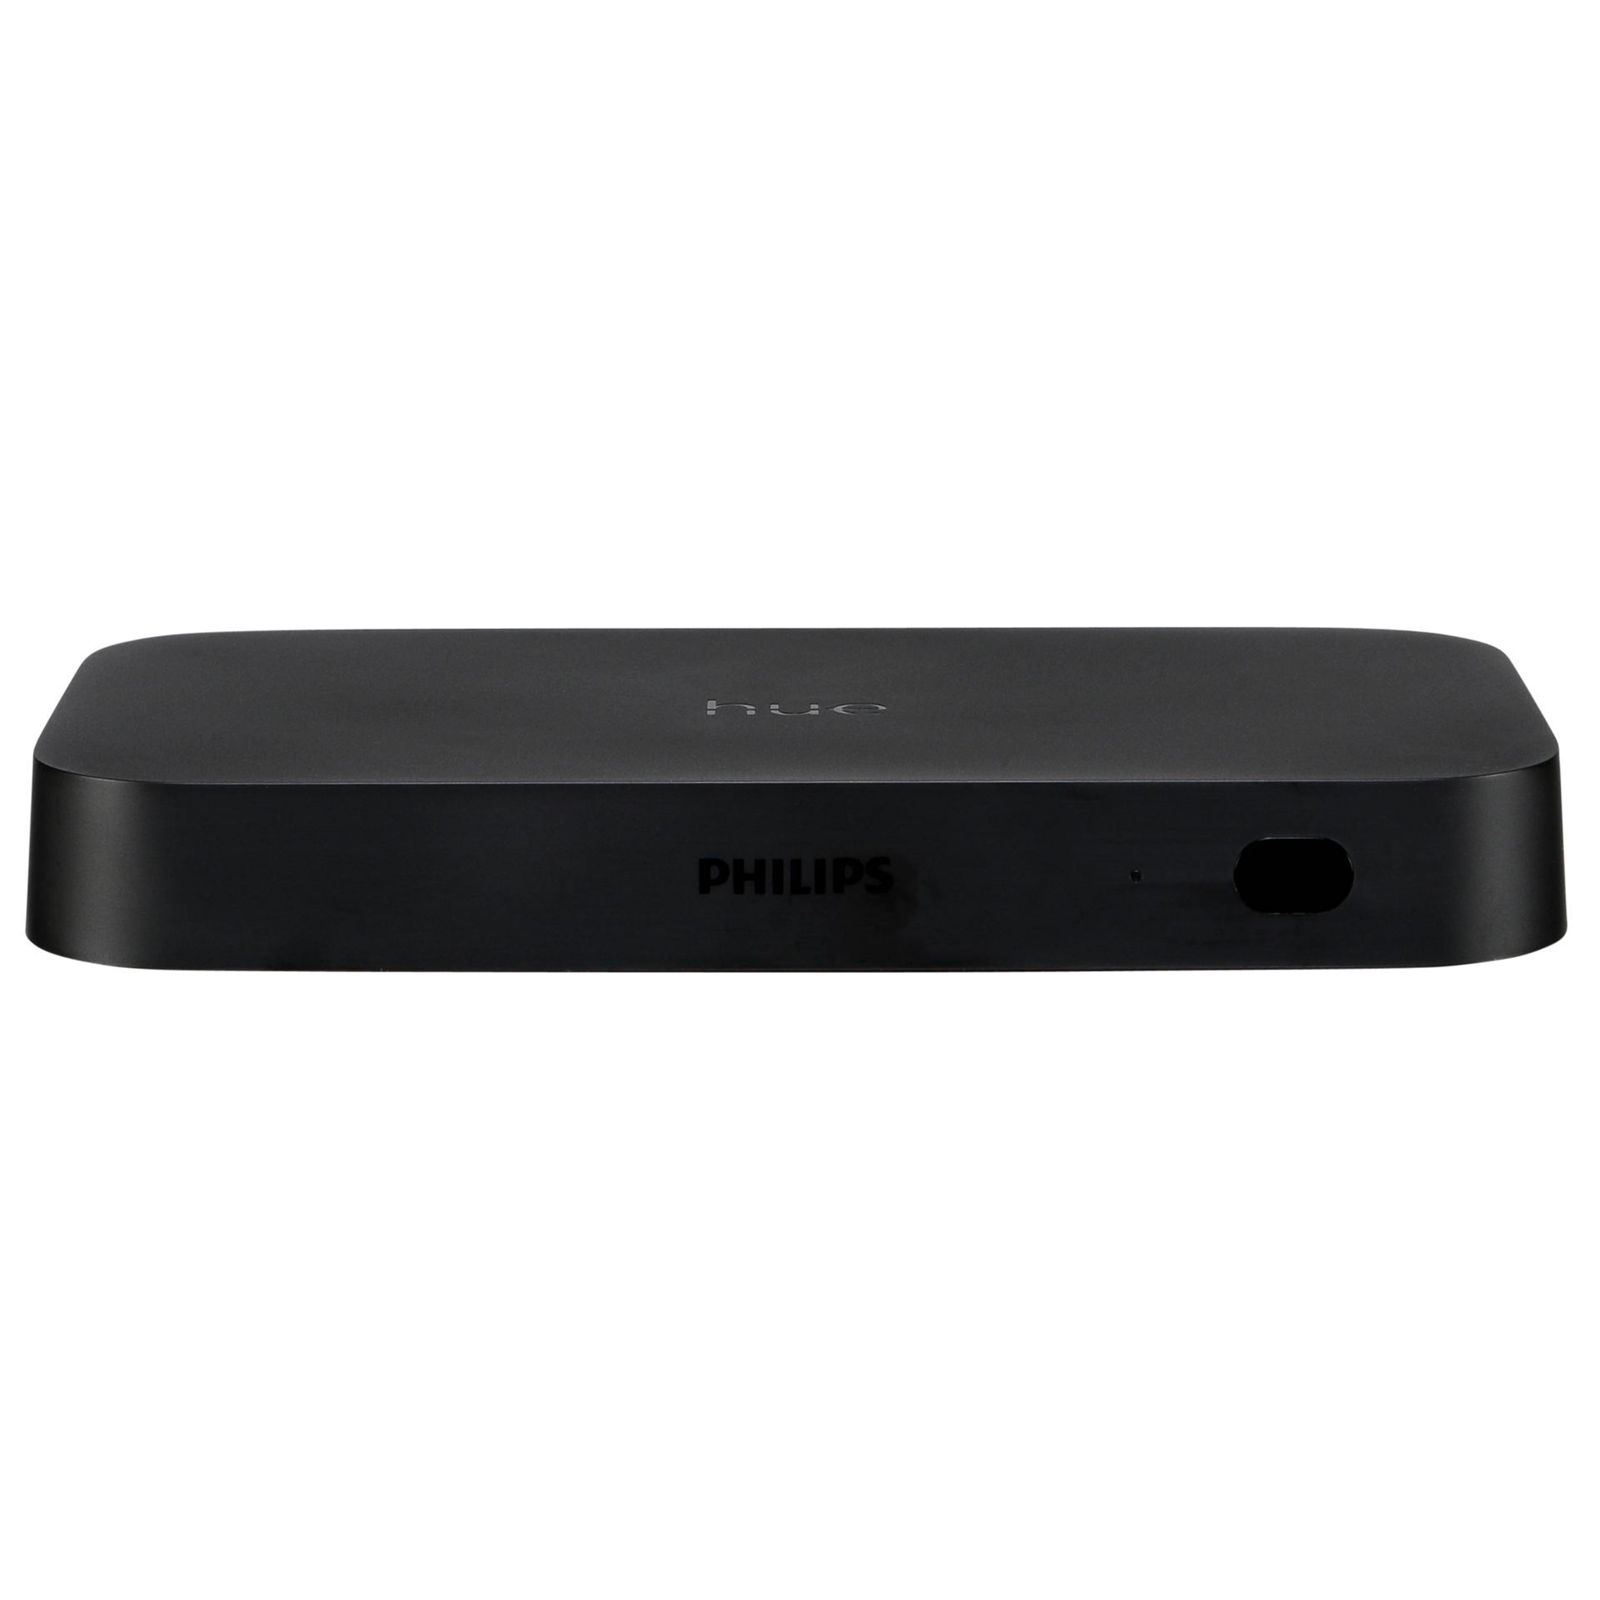 Philips Hue HDMI Sync Box